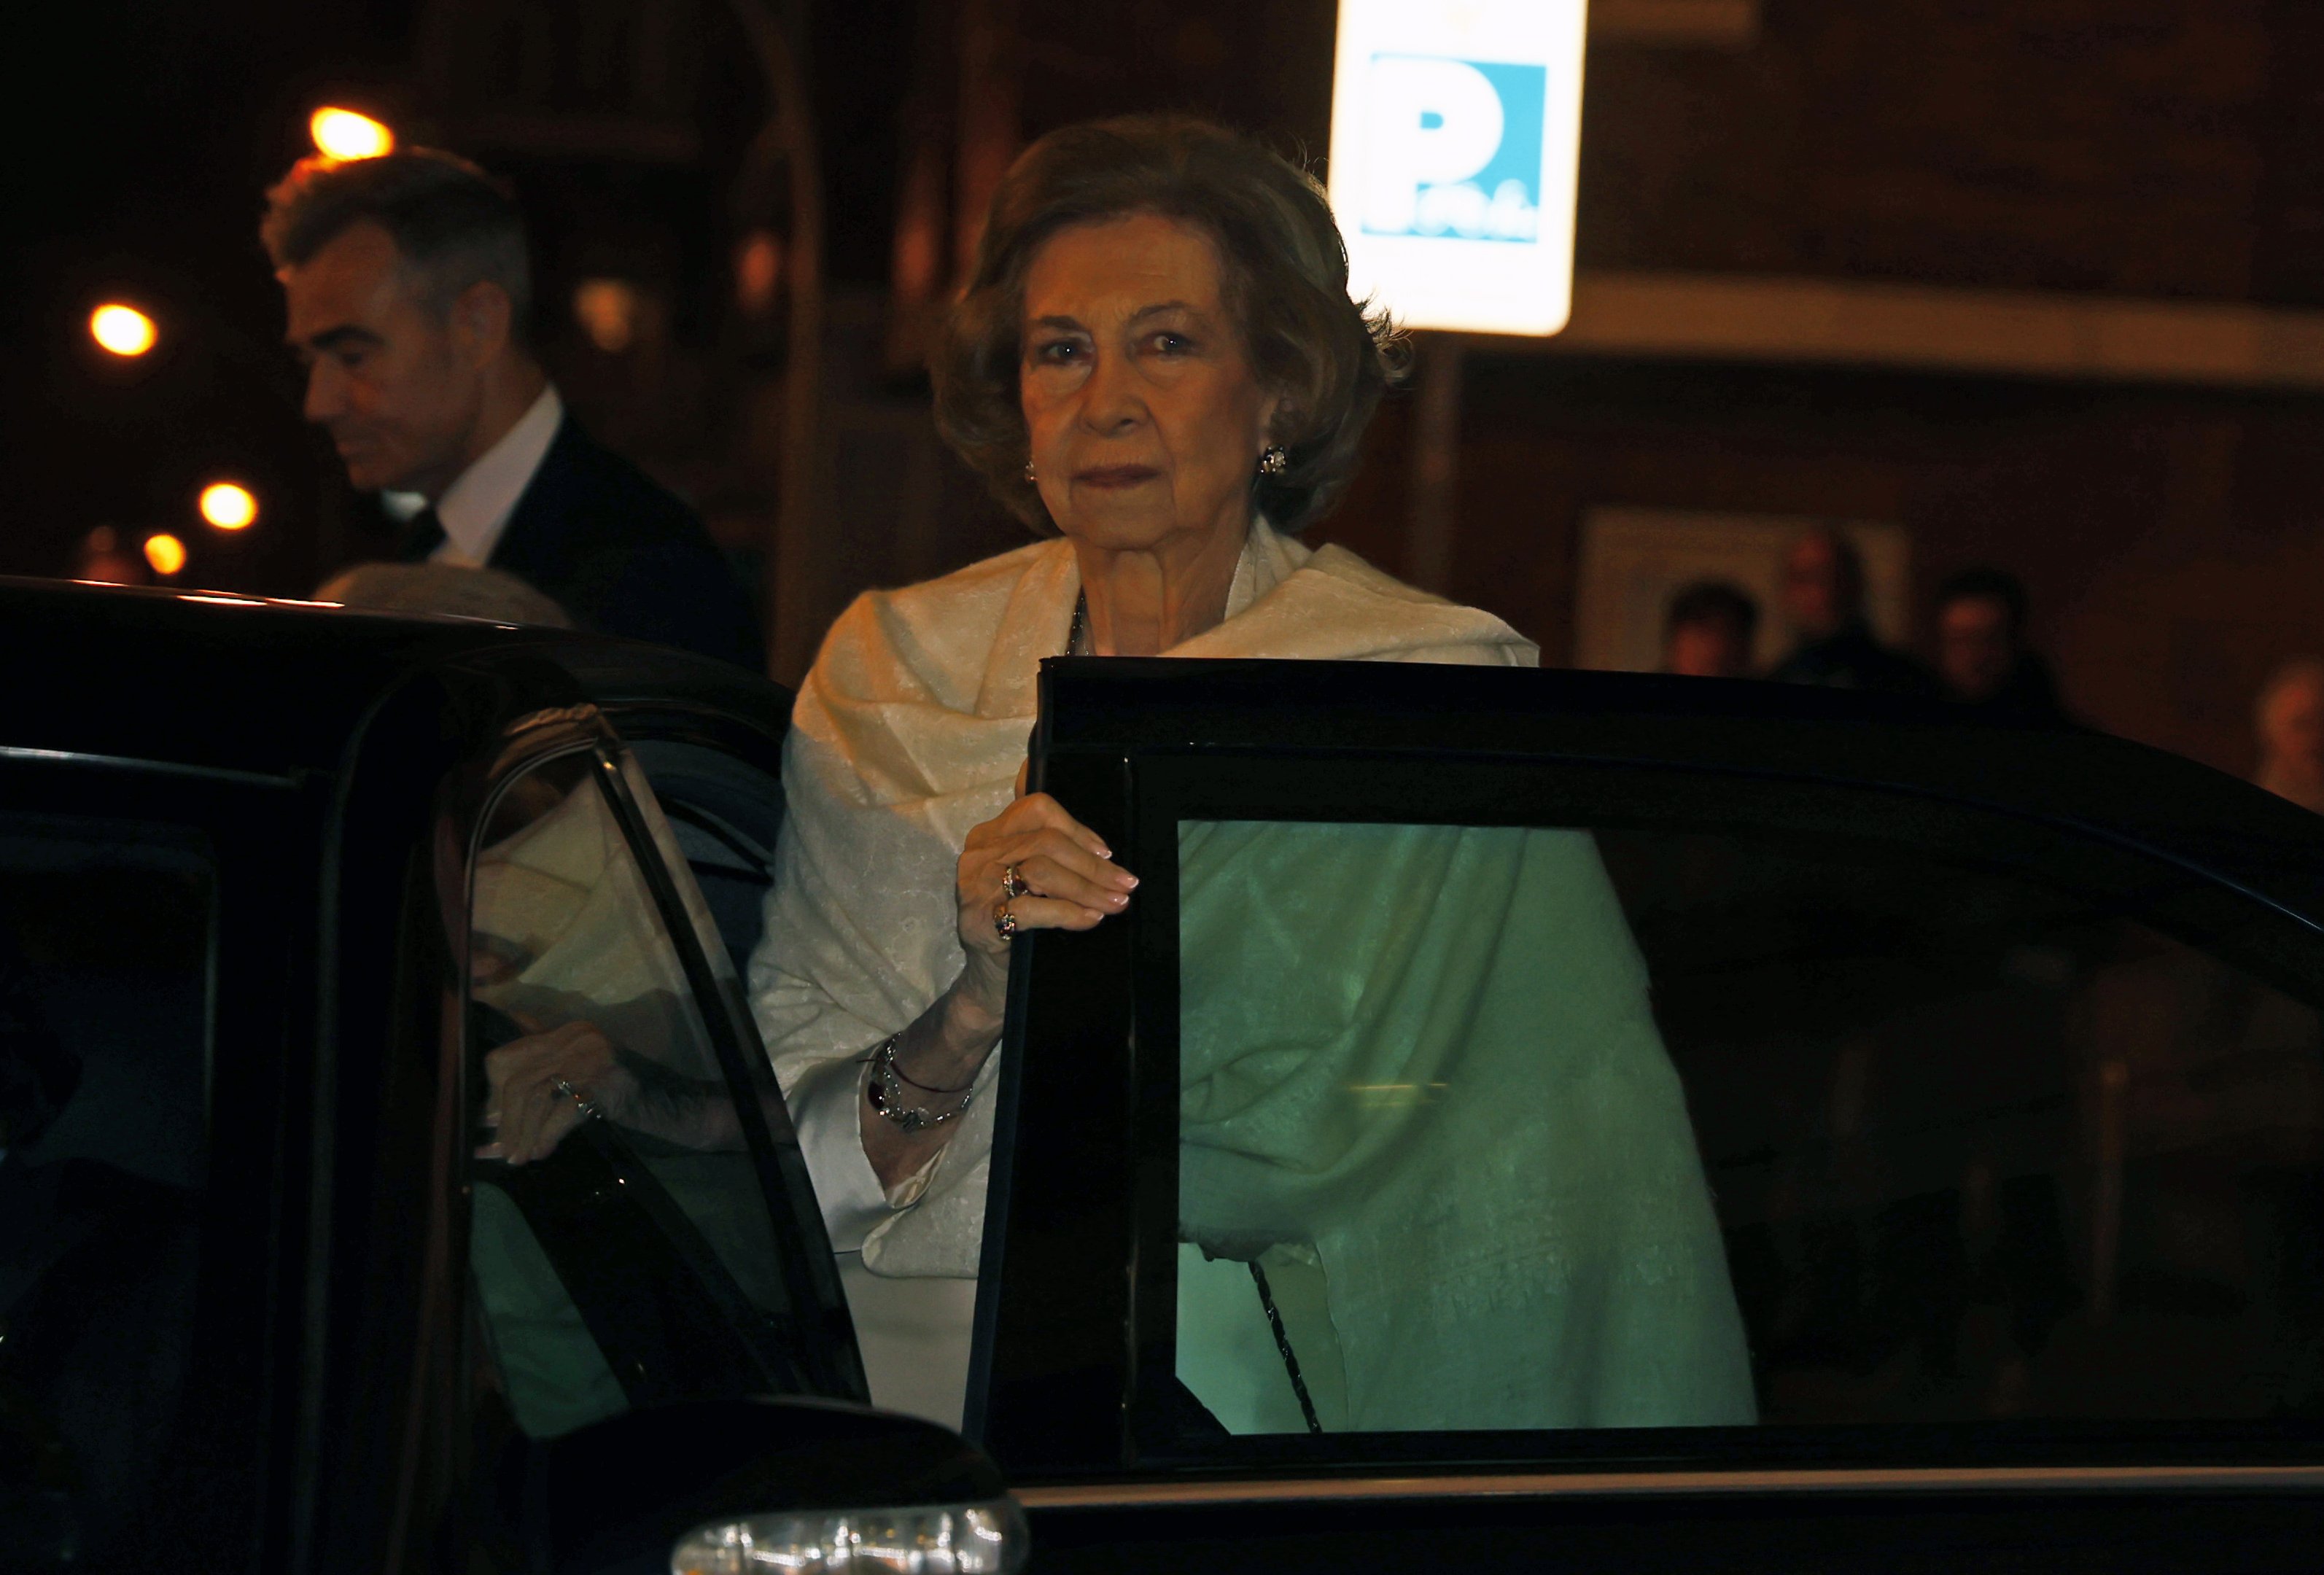 La reina Sofia frena la mudança a Zarzuela després de 5 mesos de pressió